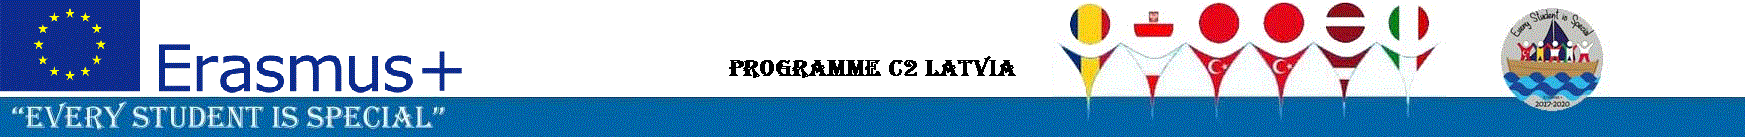 Programme C2 Latvia